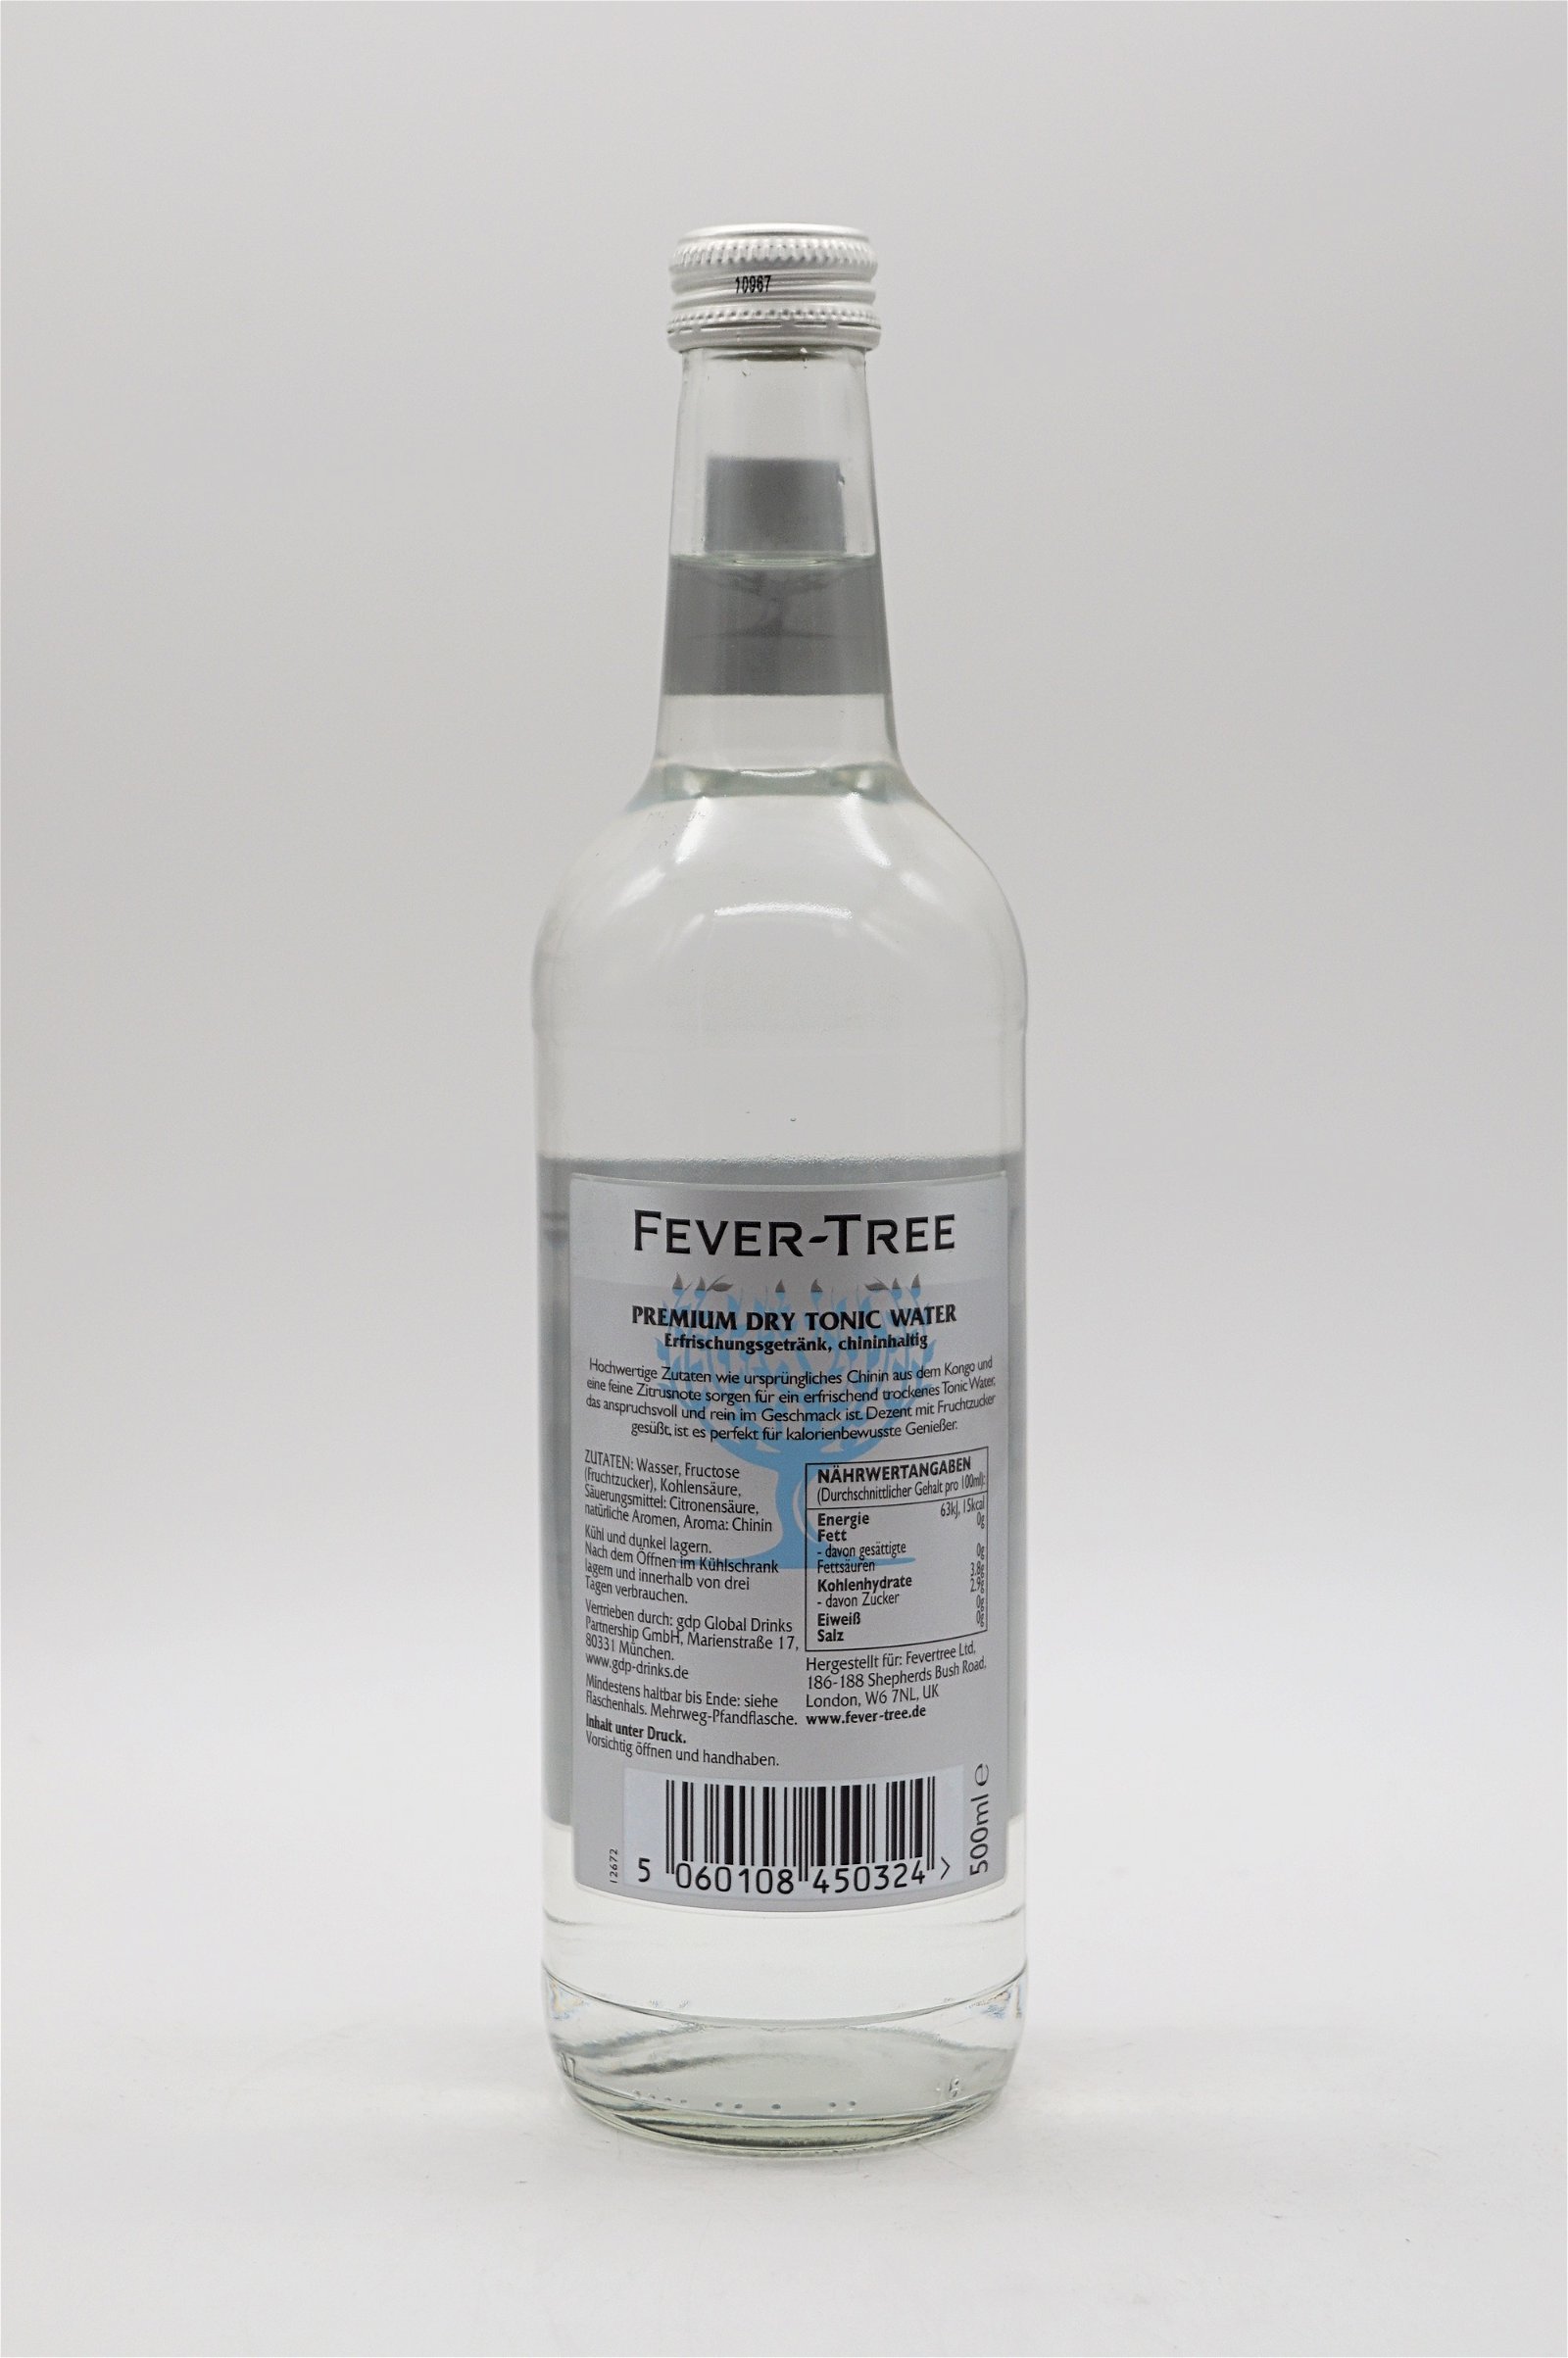 Fever-Tree Premium Dry Tonic Water